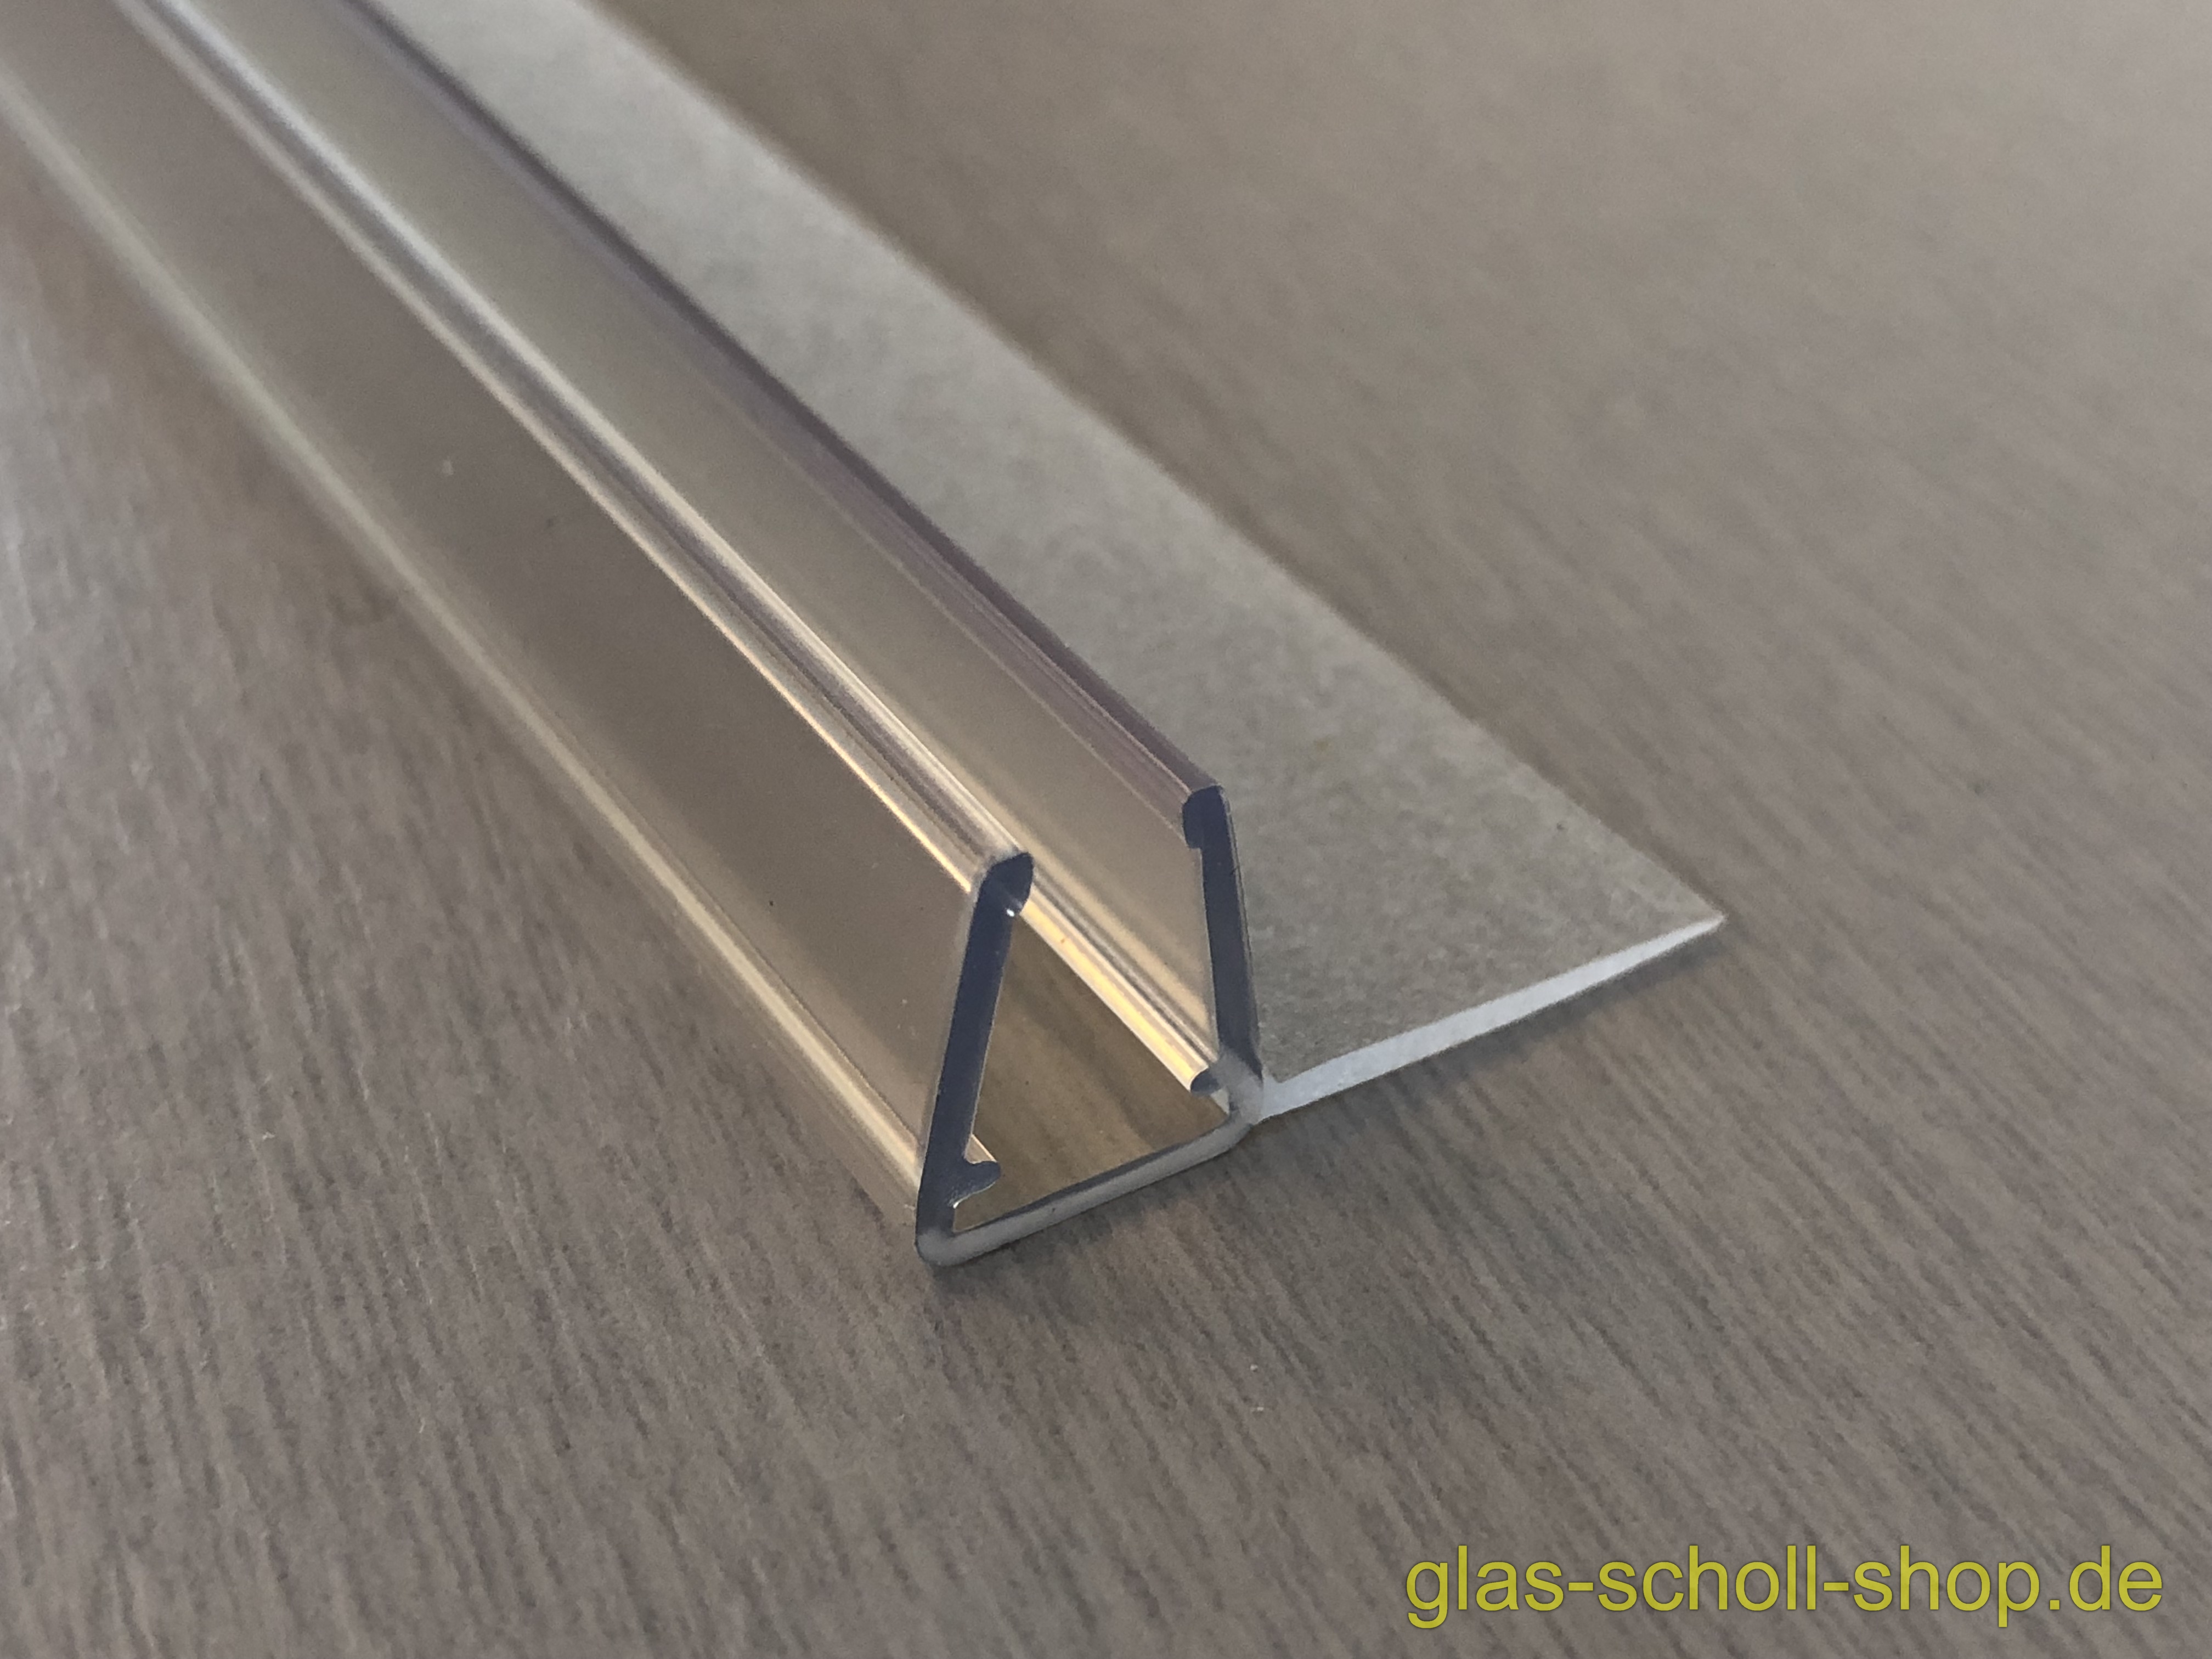 Glas Scholl Webshop, Dichtprofil 11mm für Schiebetüren mit Lippe (2500mm)  Duschdichtung 6-8mm Glas -ÜBERLÄNGE